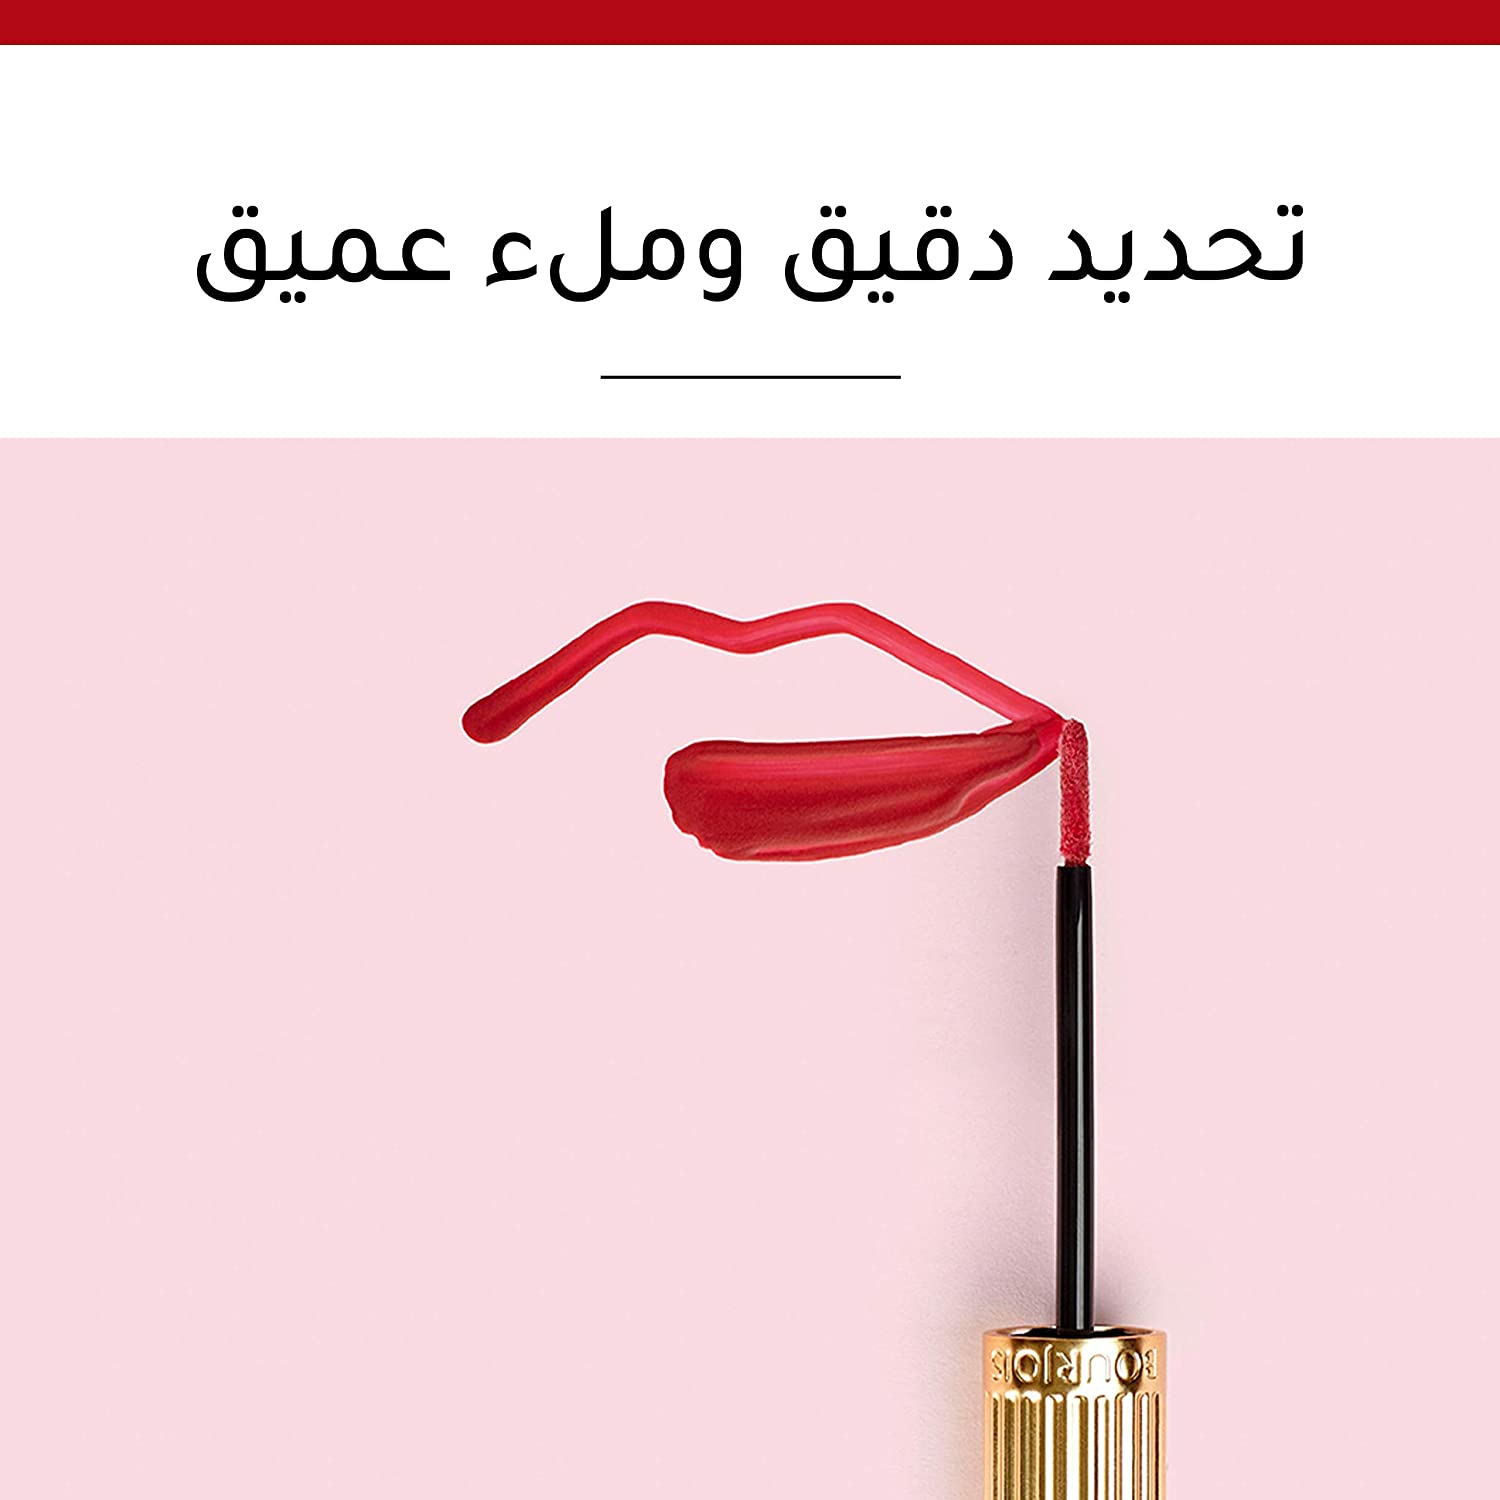 Rouge Velvet Ink Lipstick - 09